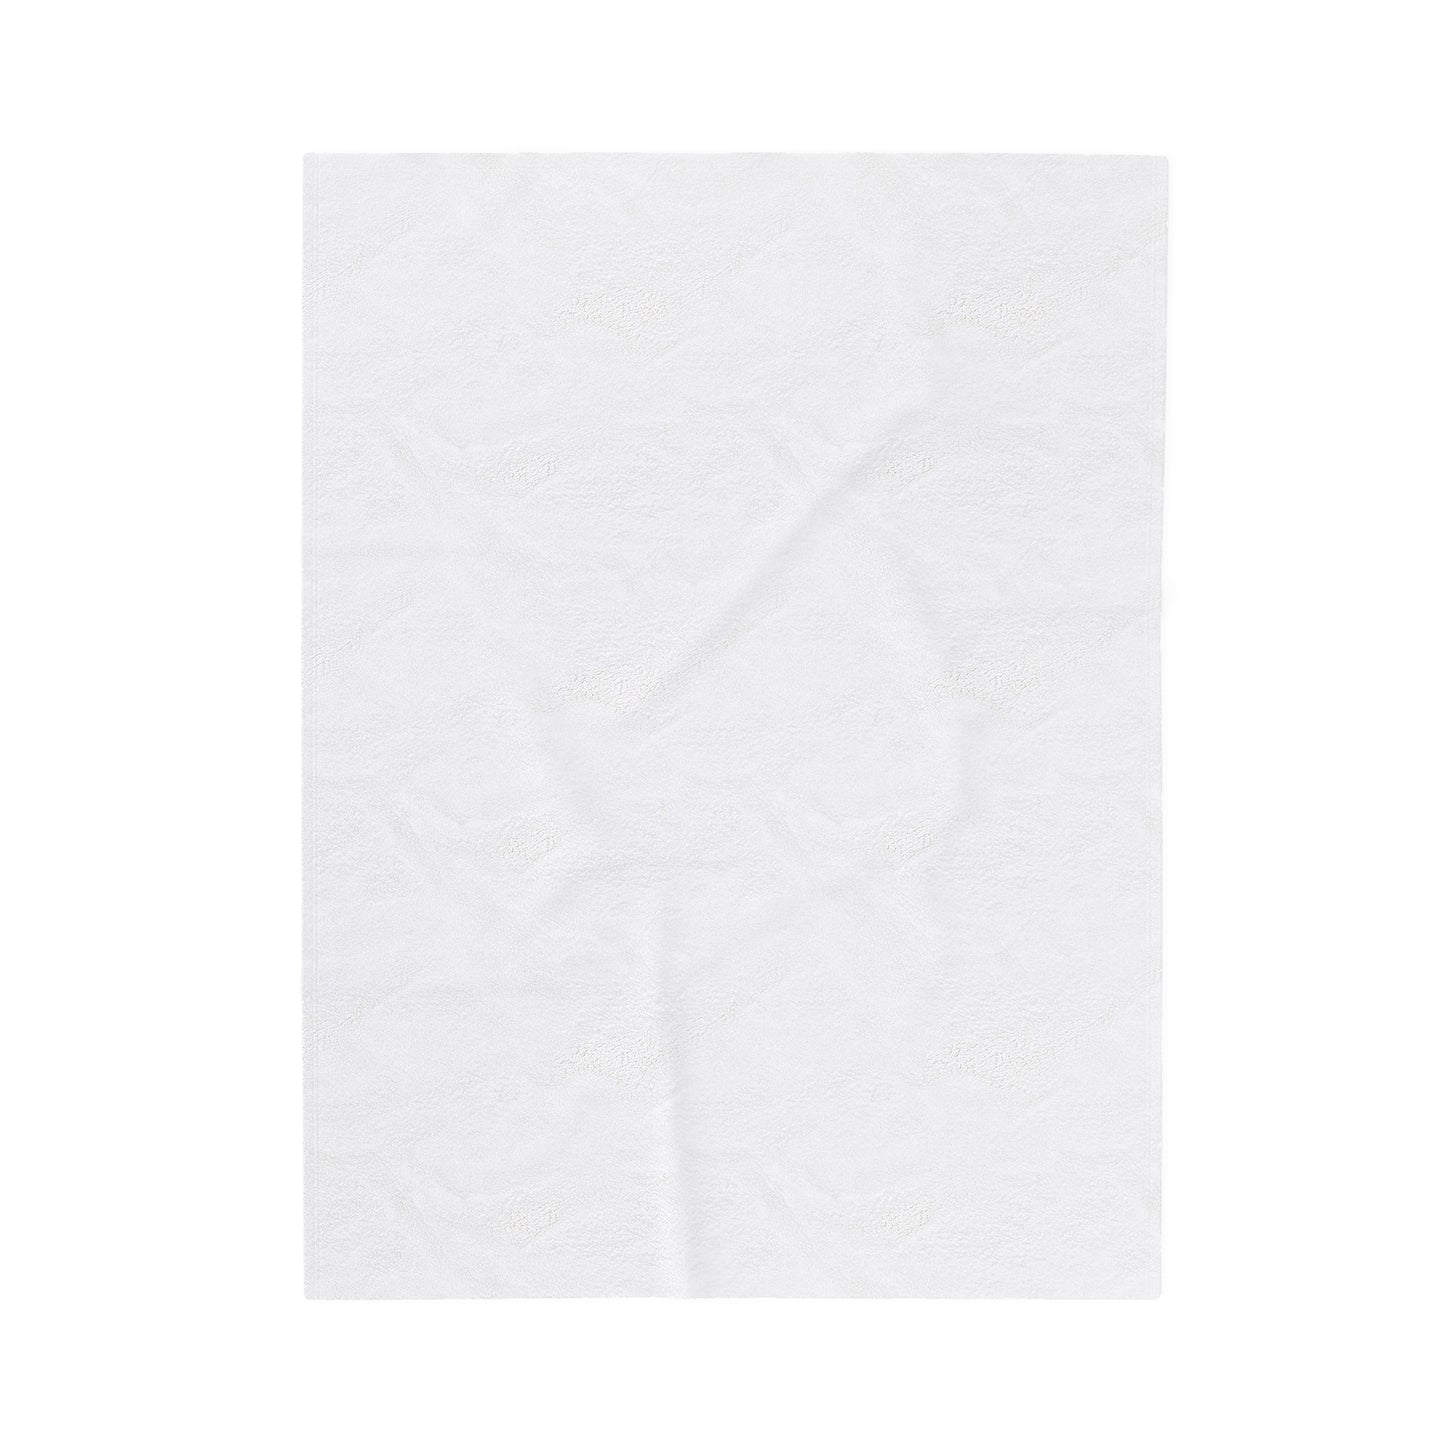 ABSTRACT SHAPES 103.1 - Velveteen Plush Blanket